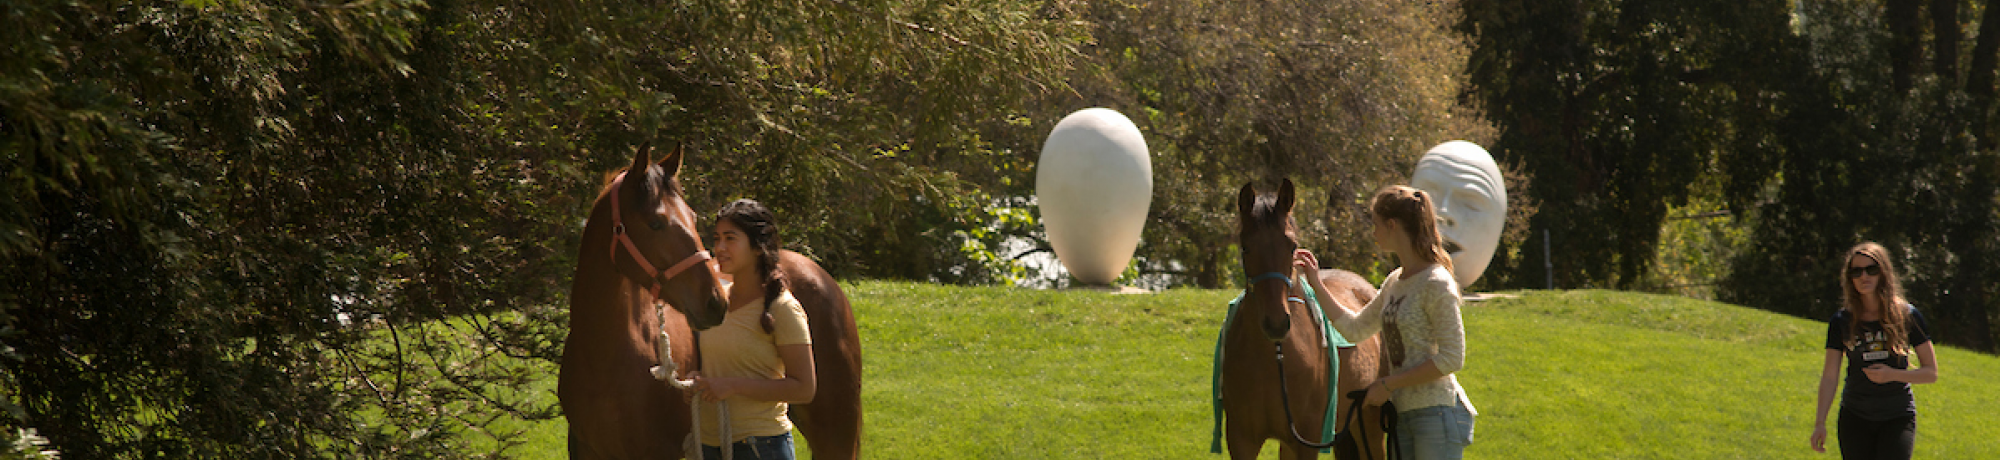 Horses near an egghead sculpture by Robert Arneson